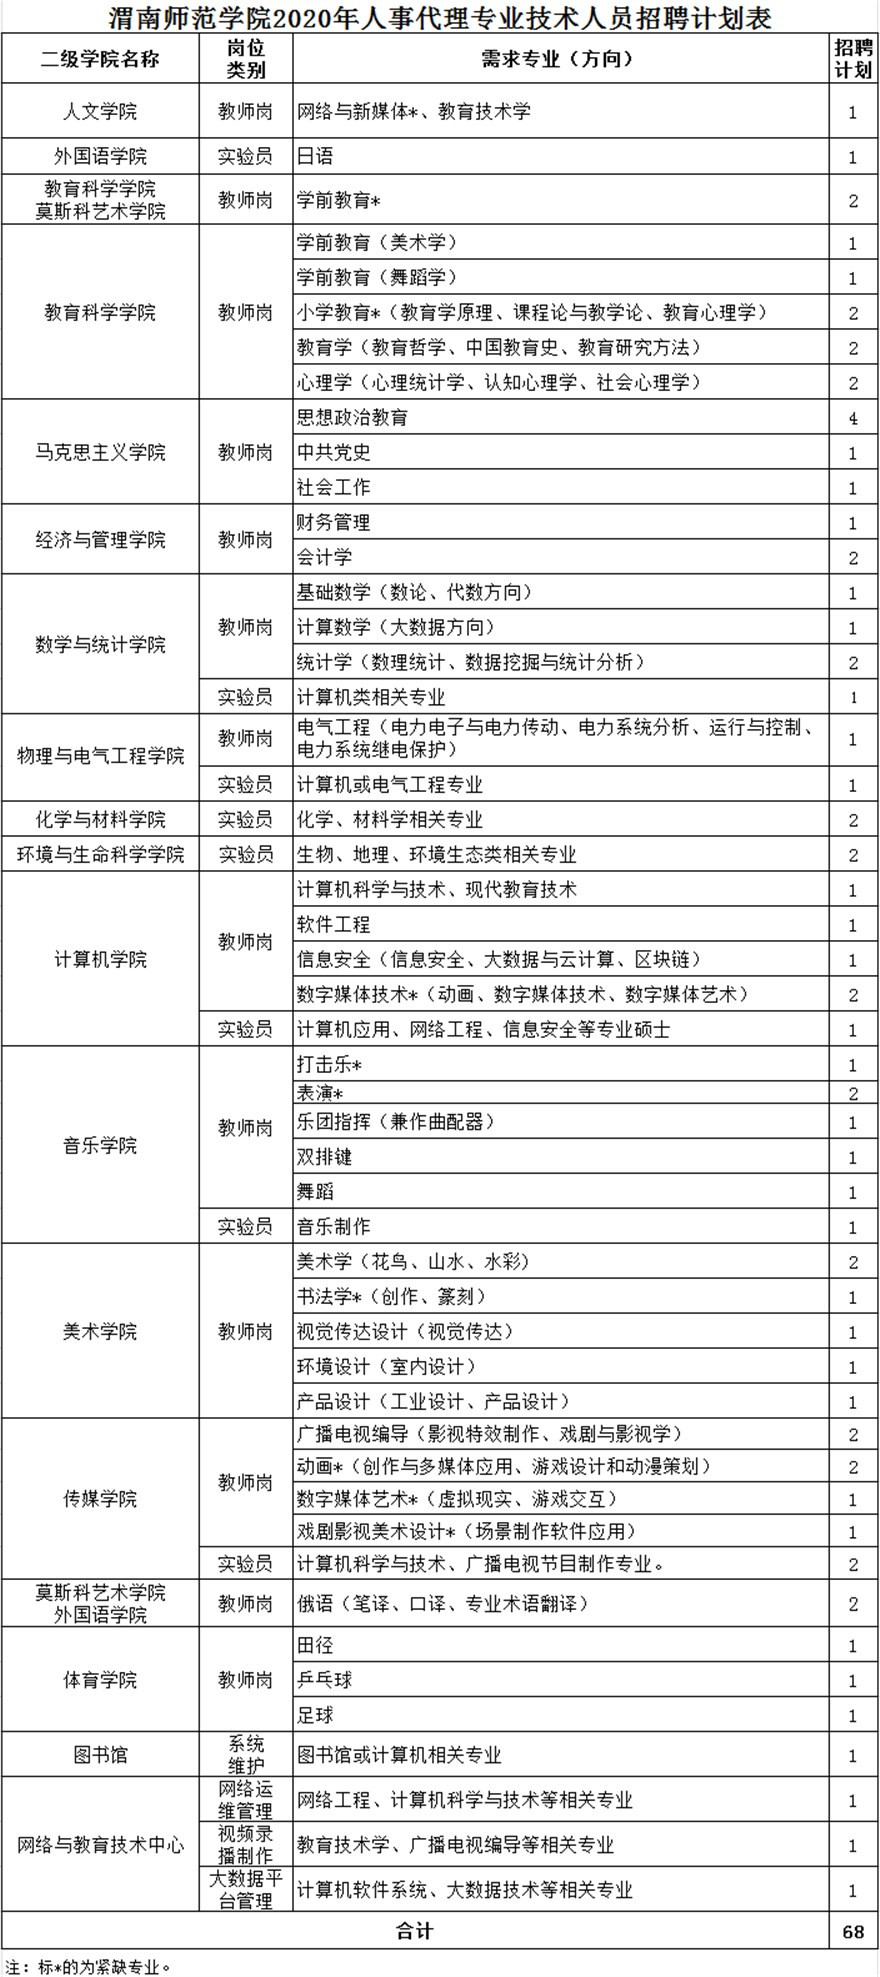 渭南师范学院2020年人事代理专业技术人员招聘公告(图1)